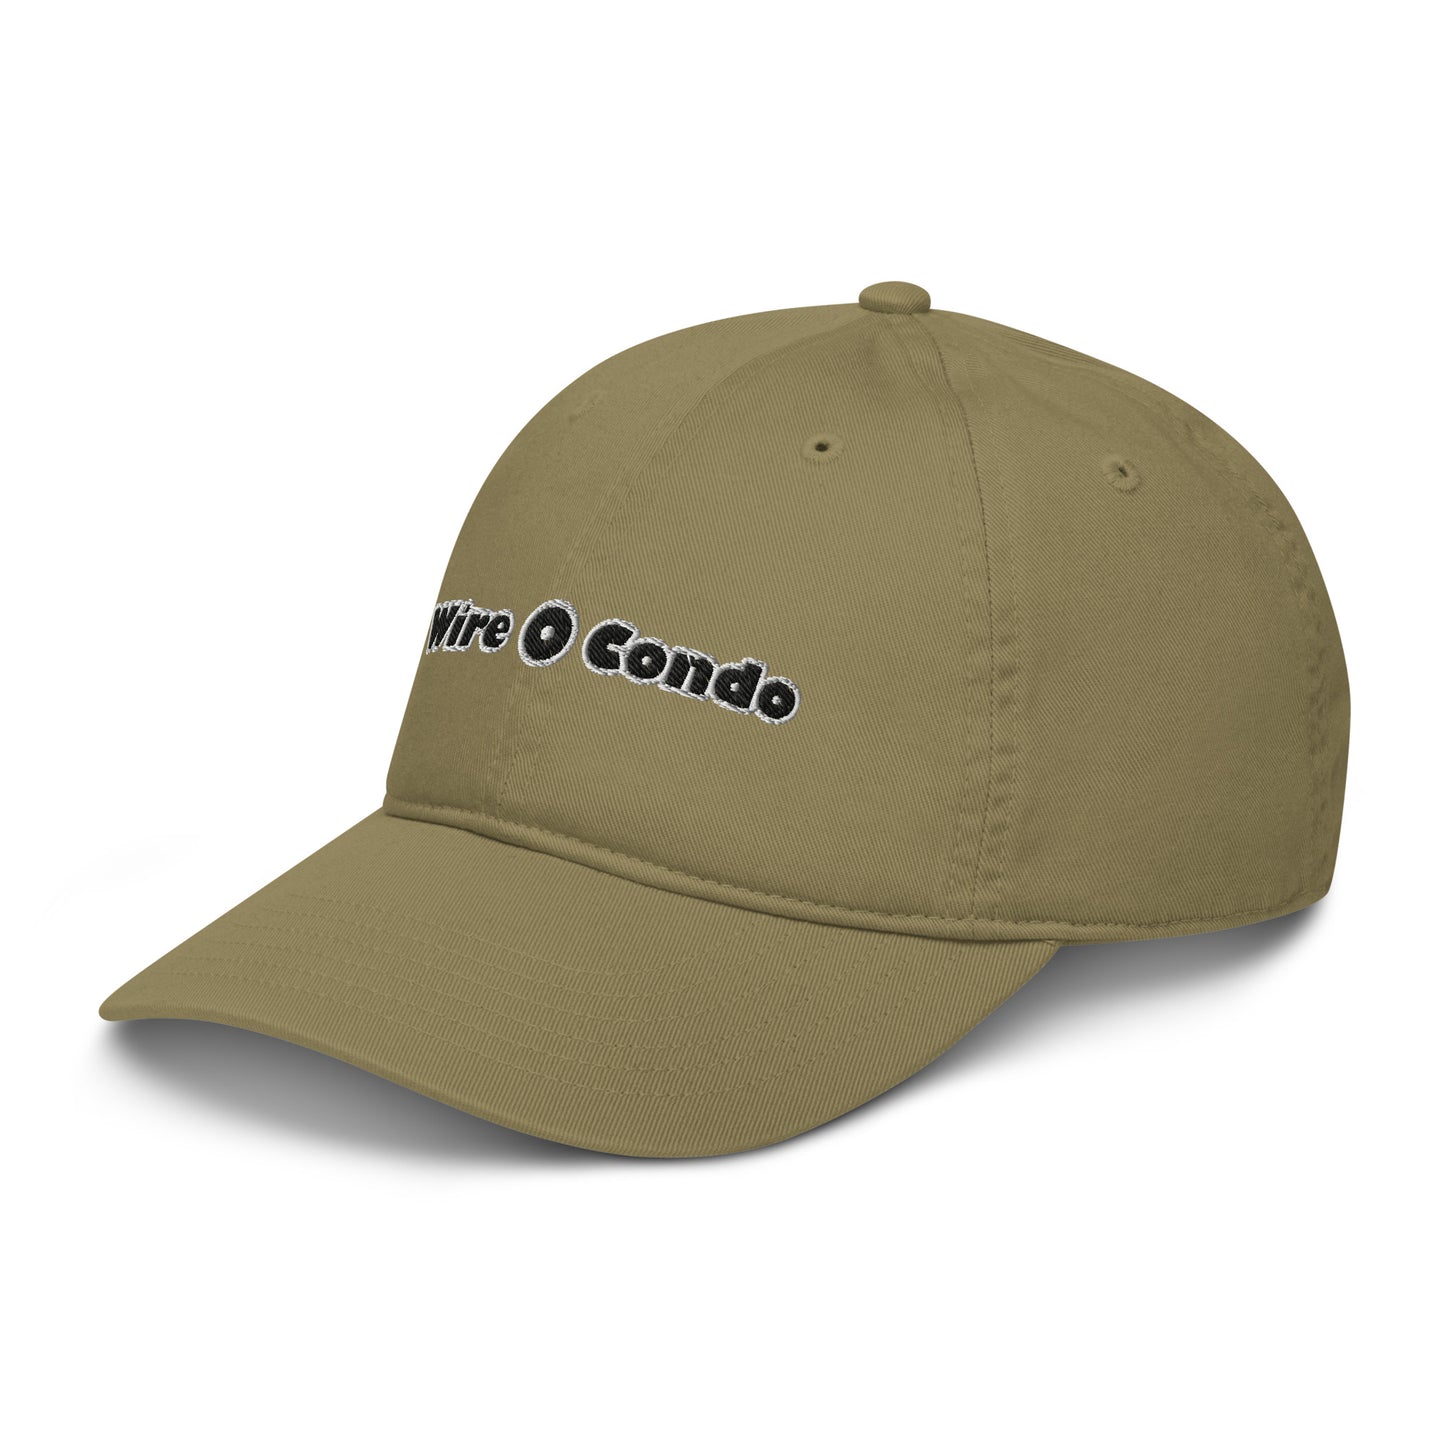 Wire Condo Organic dad hat